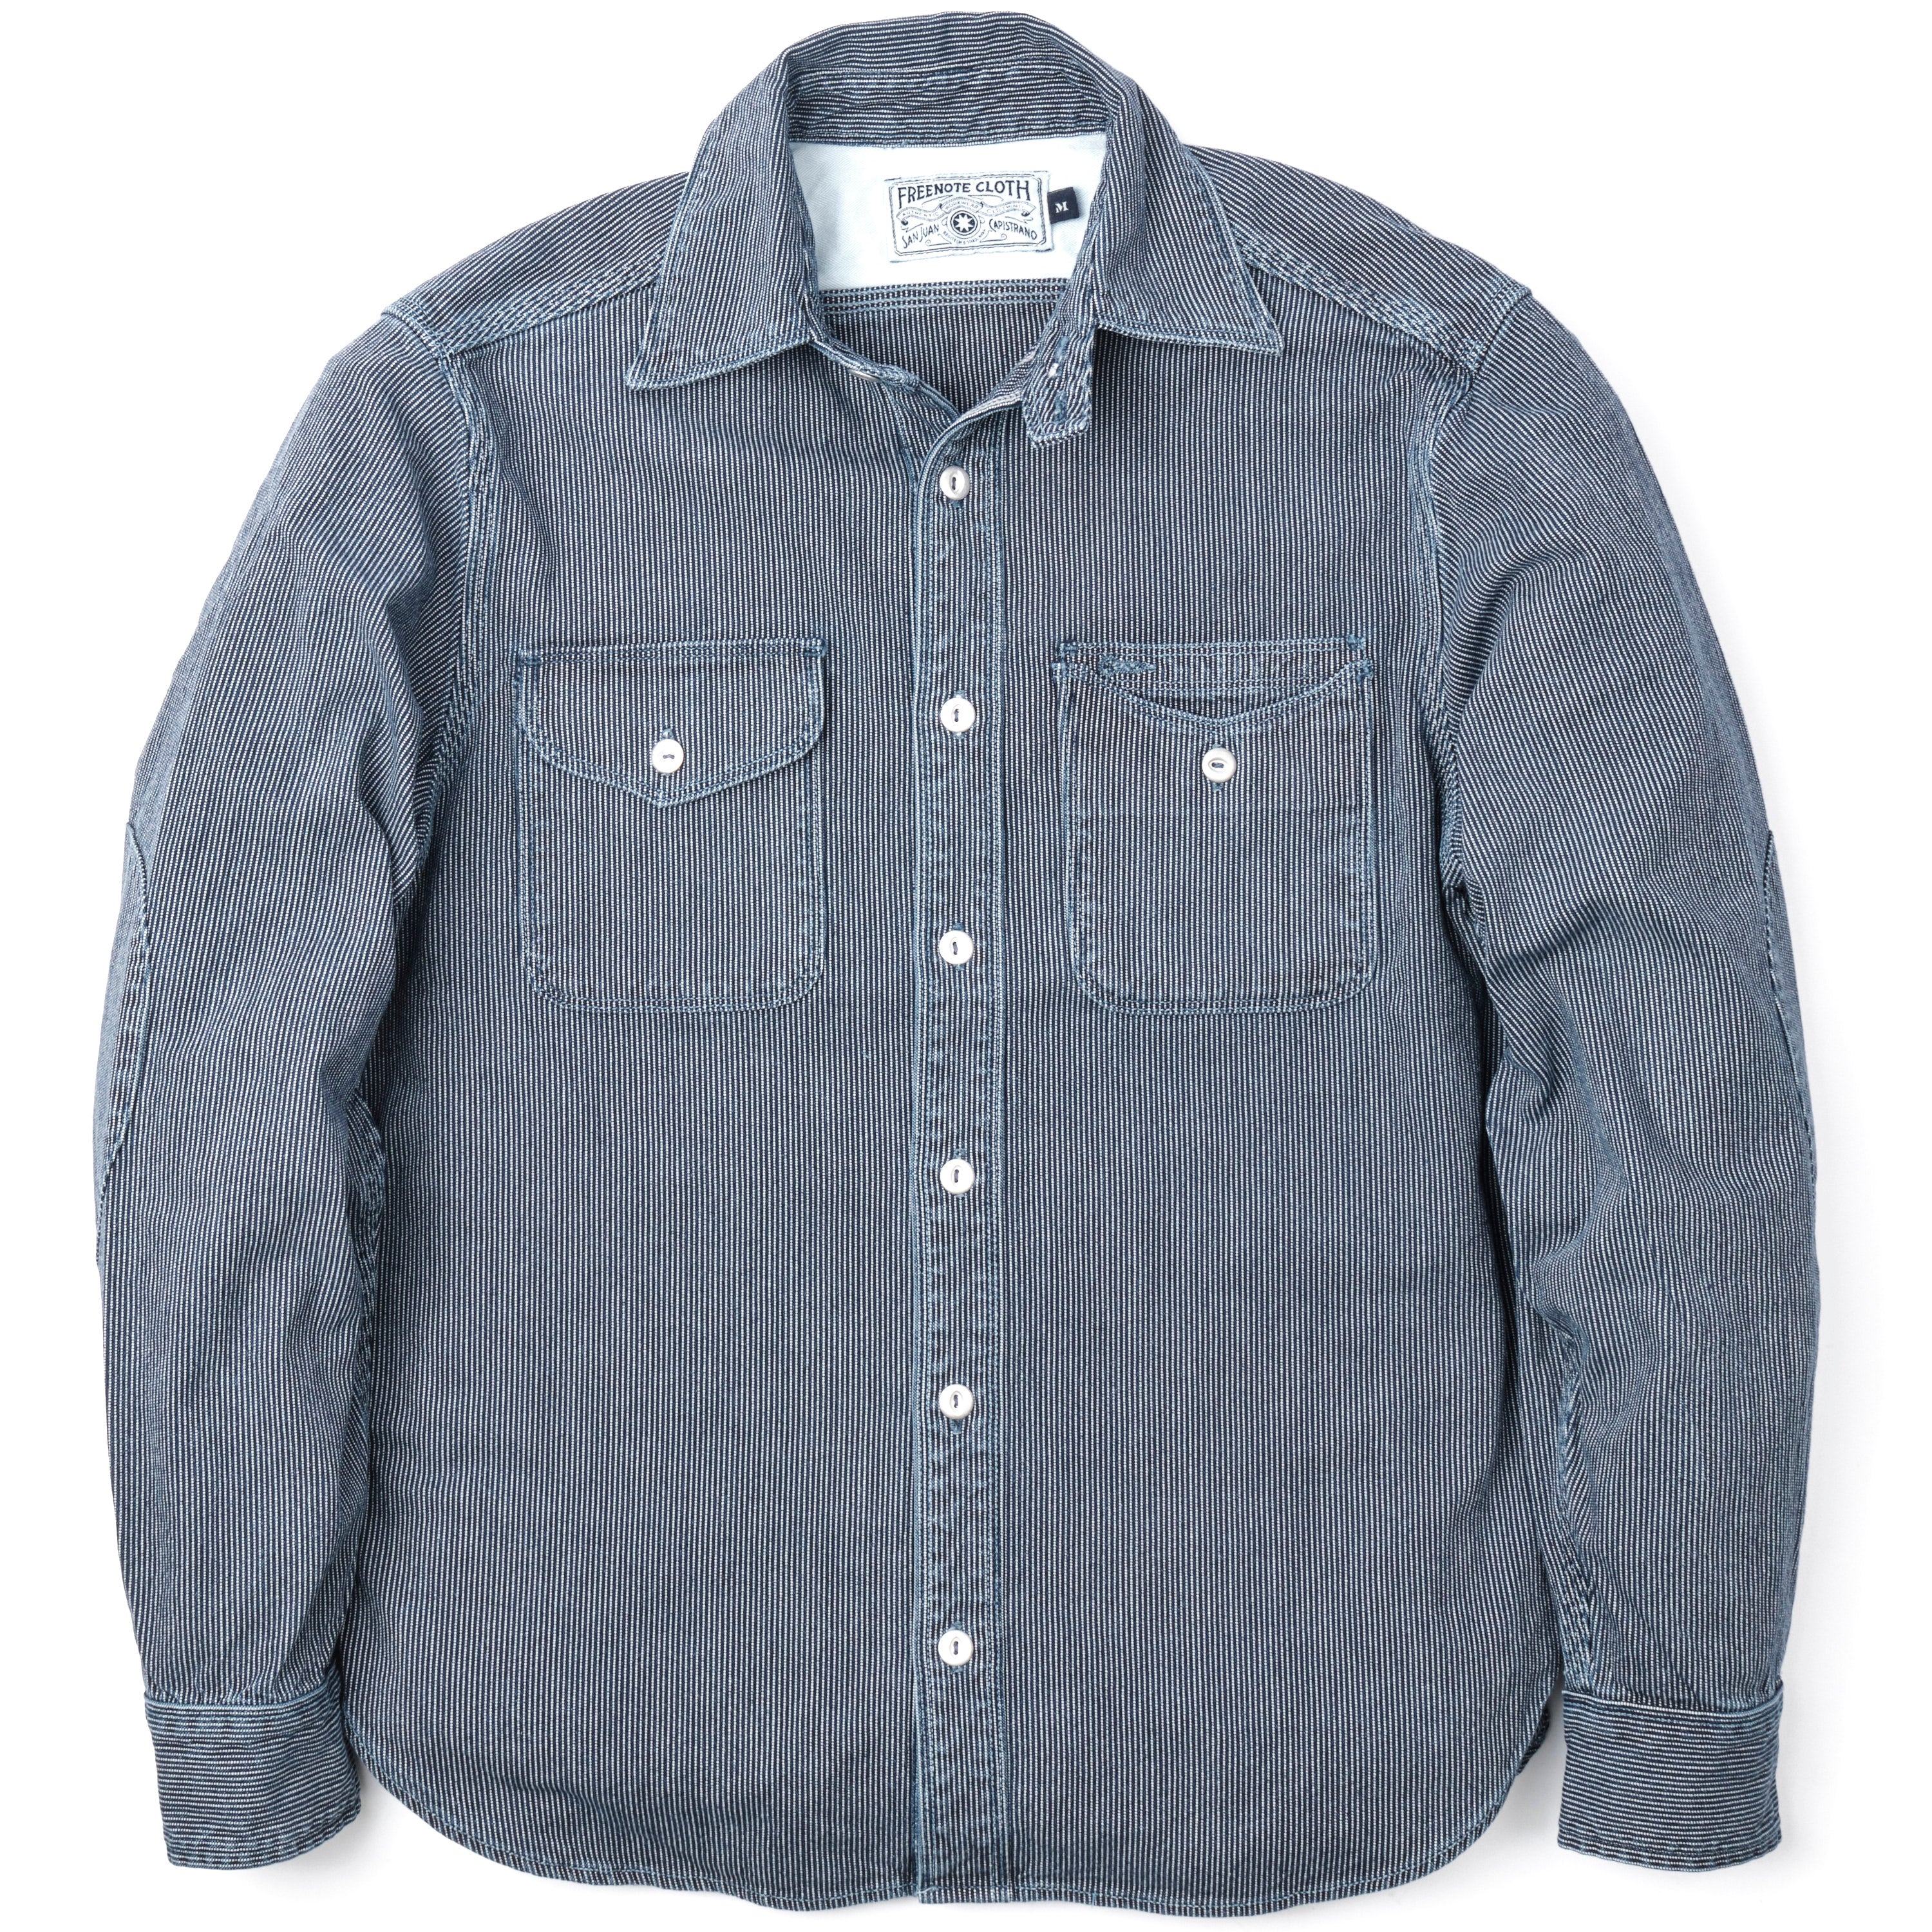 RRL Plaid Shirt Jacket - Blue/White Plaid on Garmentory